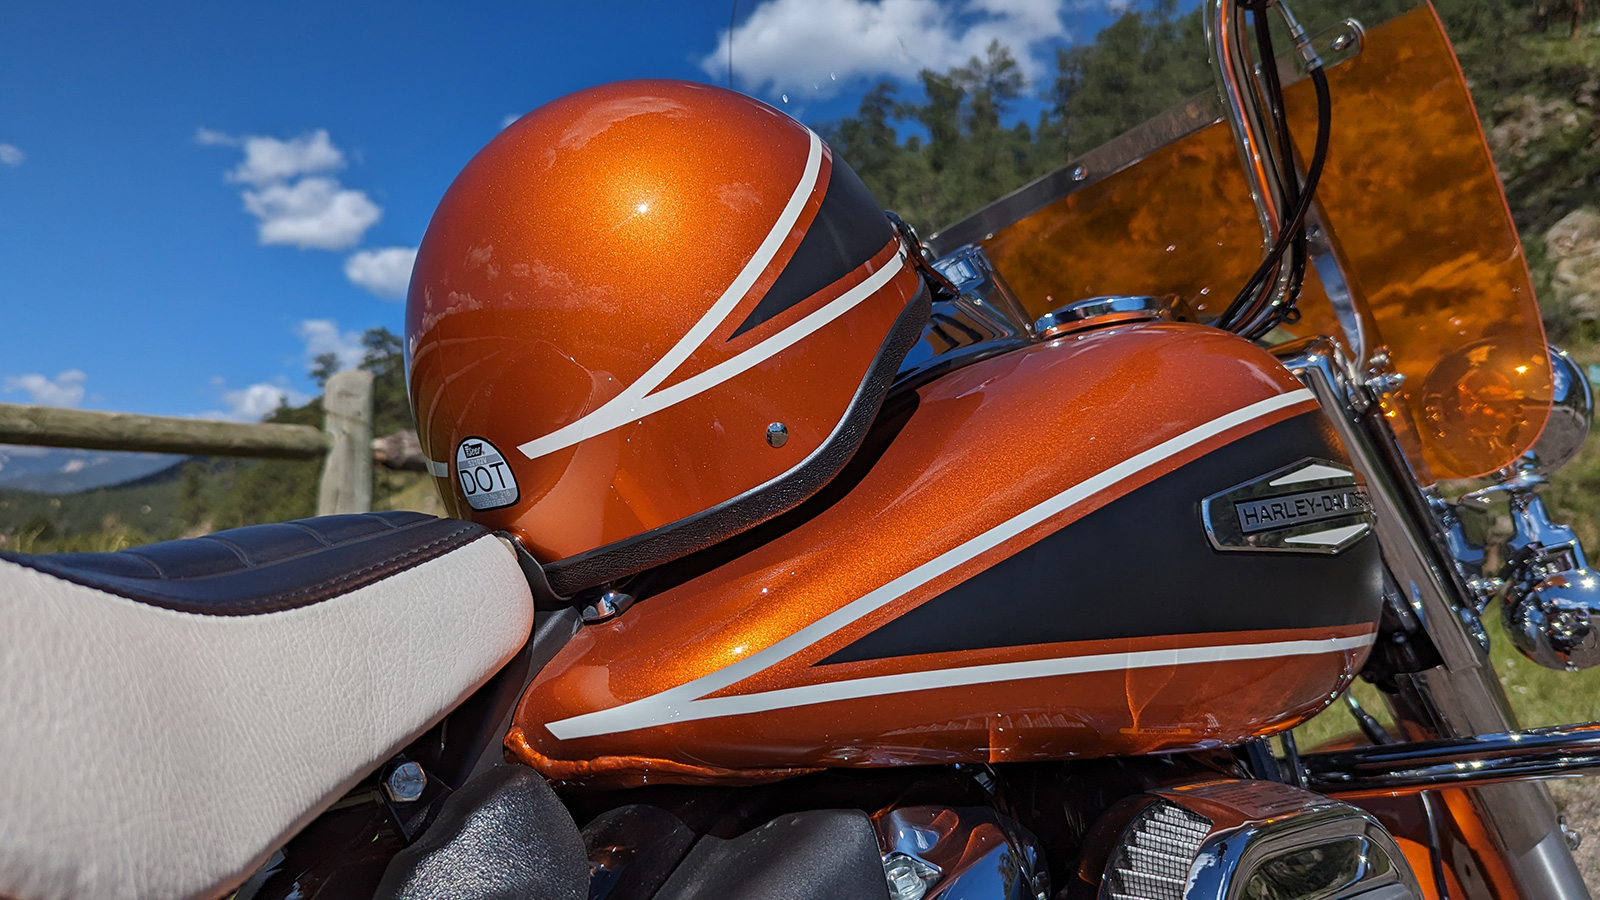 HIFi Orange Harley-Davidson Highway King color matched motorcycle helmet